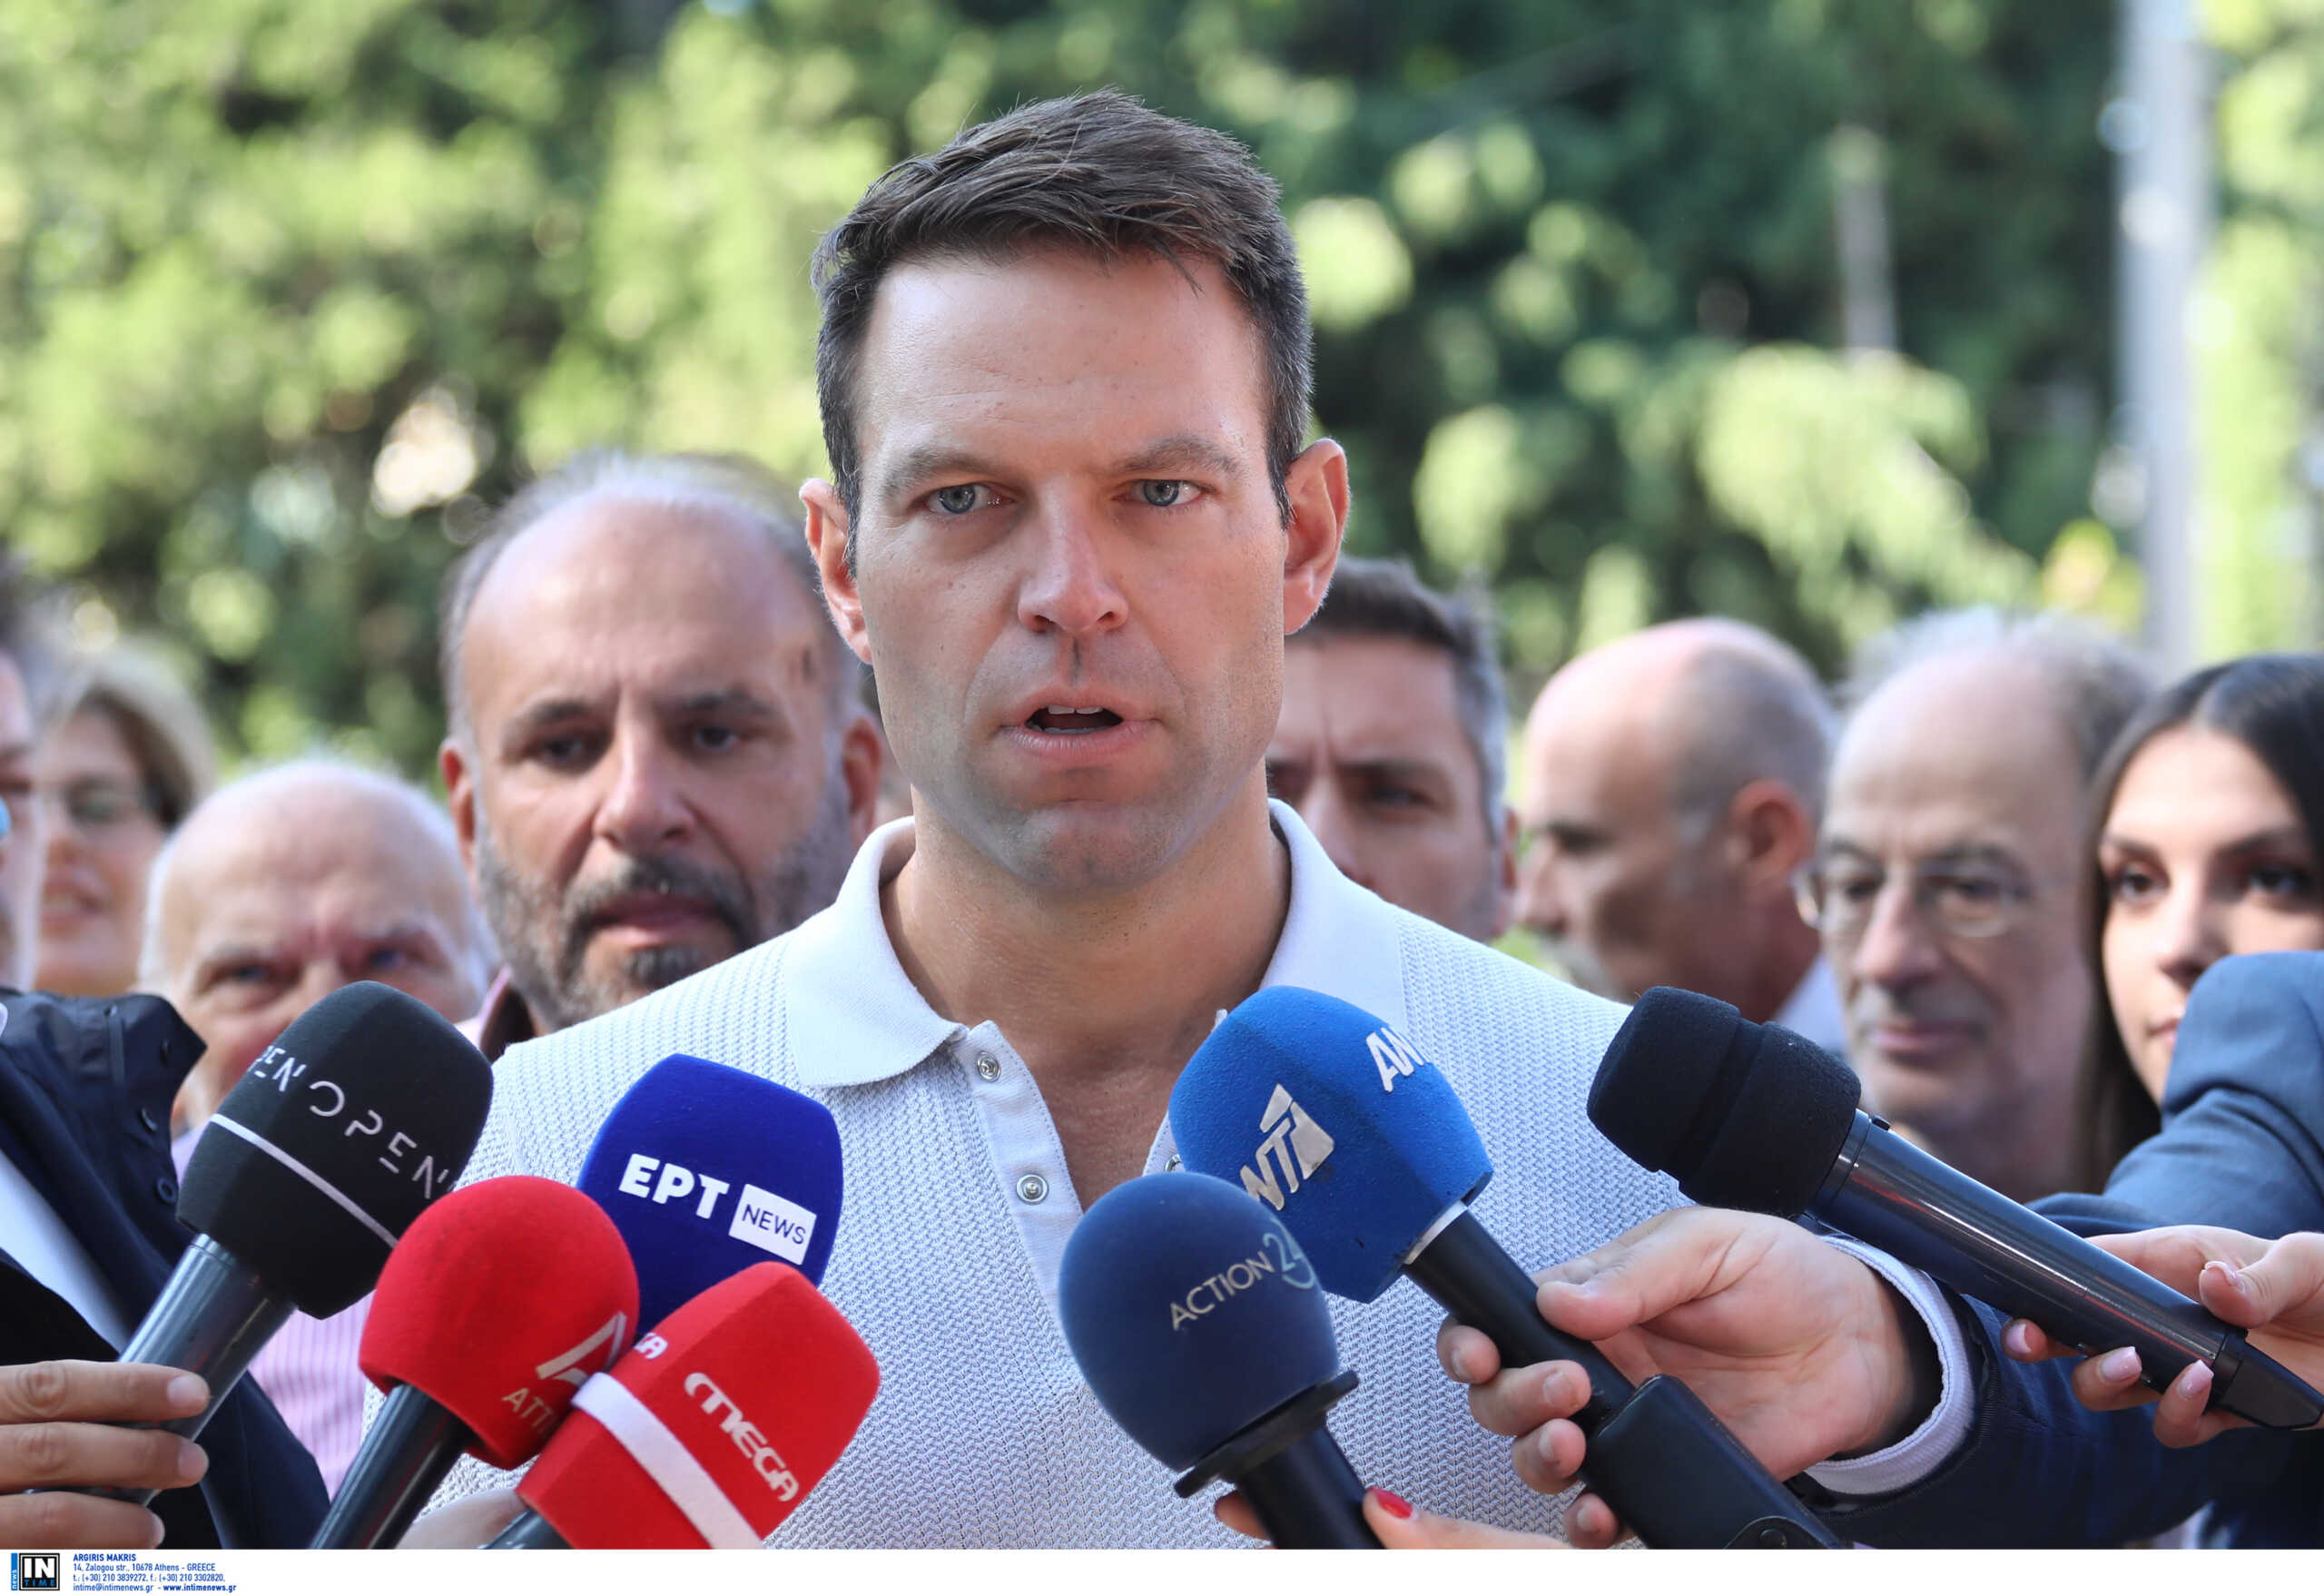 ΣΥΡΙΖΑ: «Μύλος» ξανά με αφορμή τους τομεάρχες και τη δήλωση Κασσελάκη – Έρχεται νέο «ματς» στην Πολιτική Γραμματεία